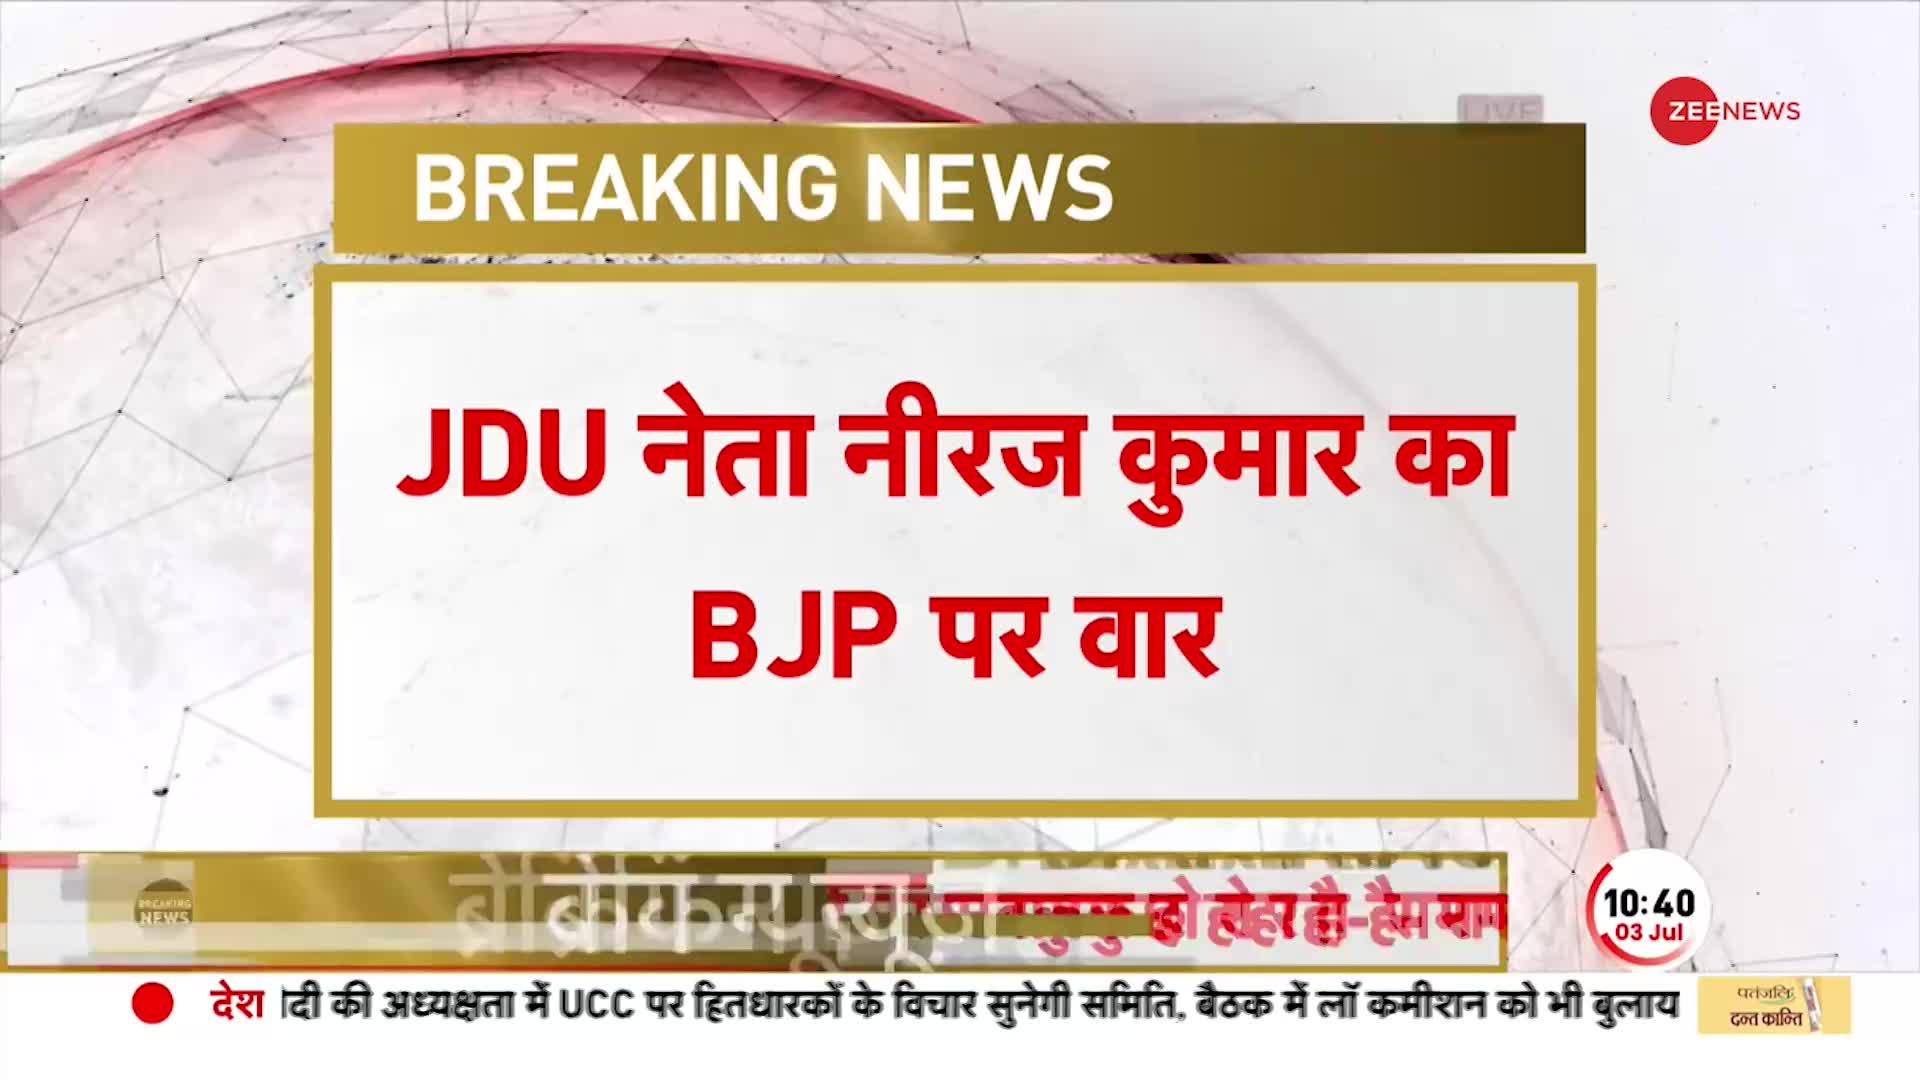 Neeraj Kumar on BJP: JDU नेता का गंभीर आरोप, 'दलों को तोड़ने का काम कर रही भारतीय जनता पार्टी'